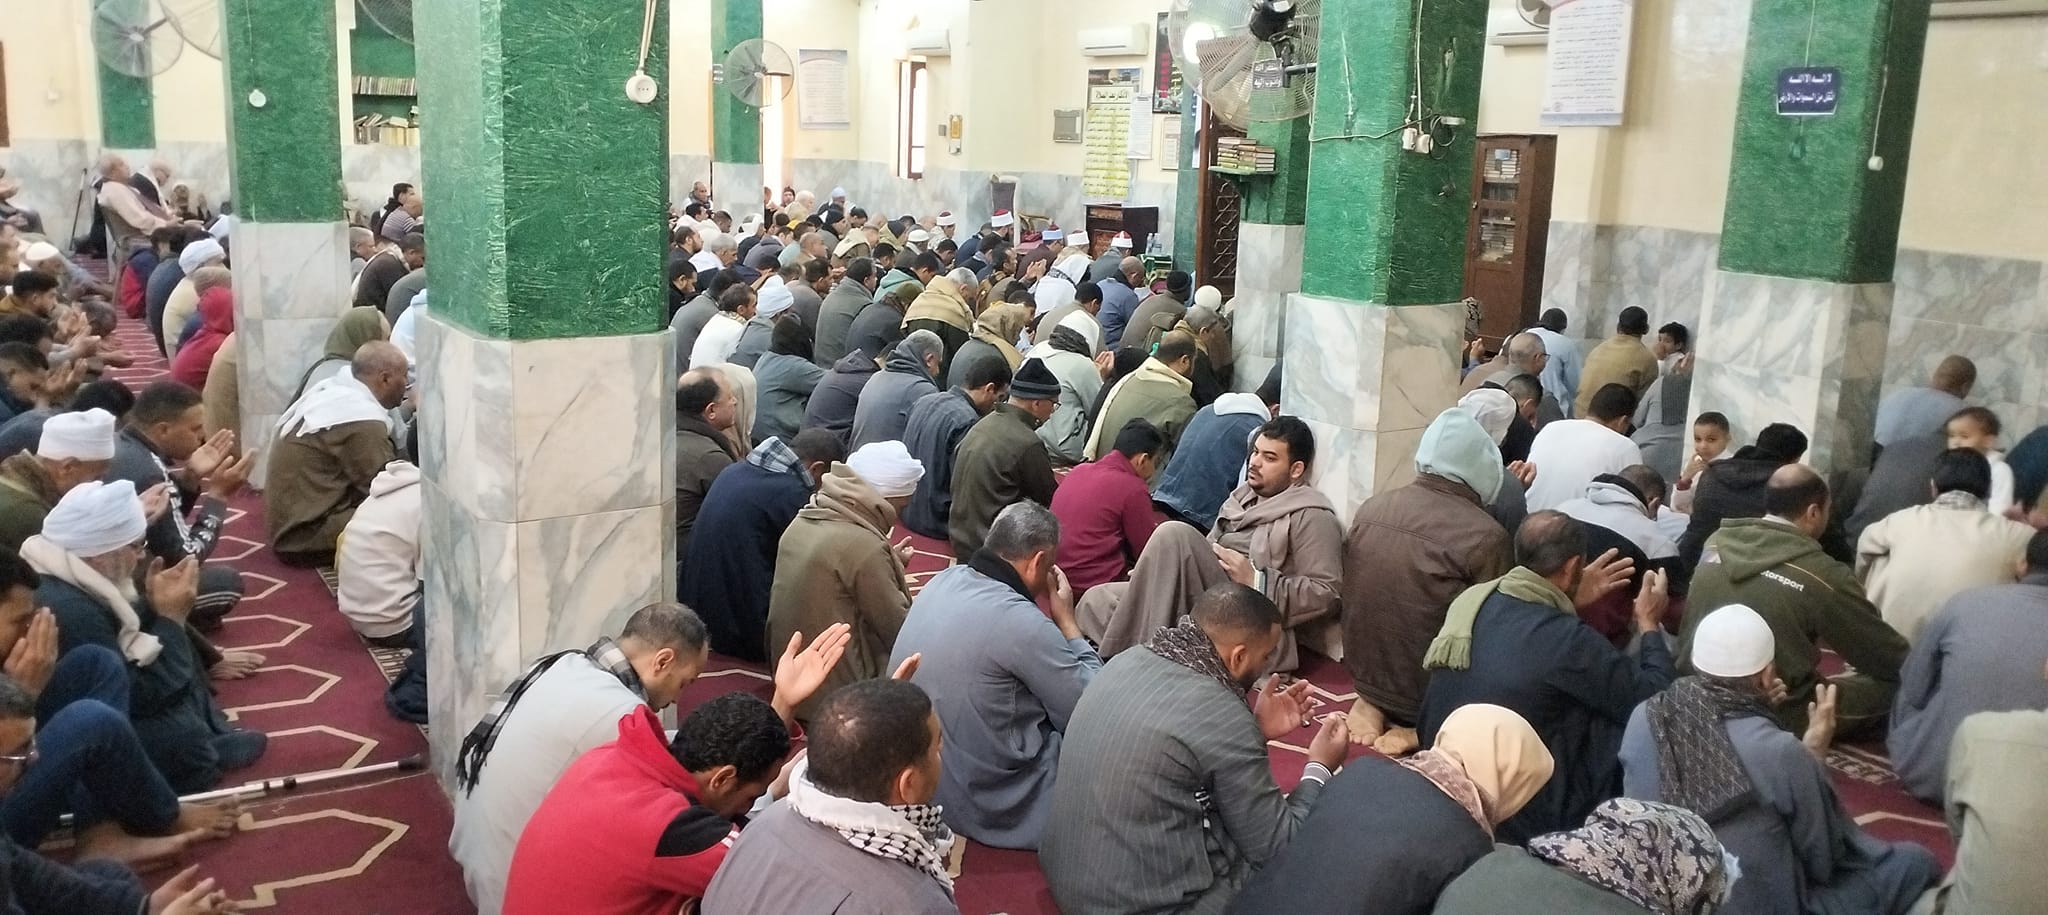 جموع المصلين اليوم بمساجد المنشاه